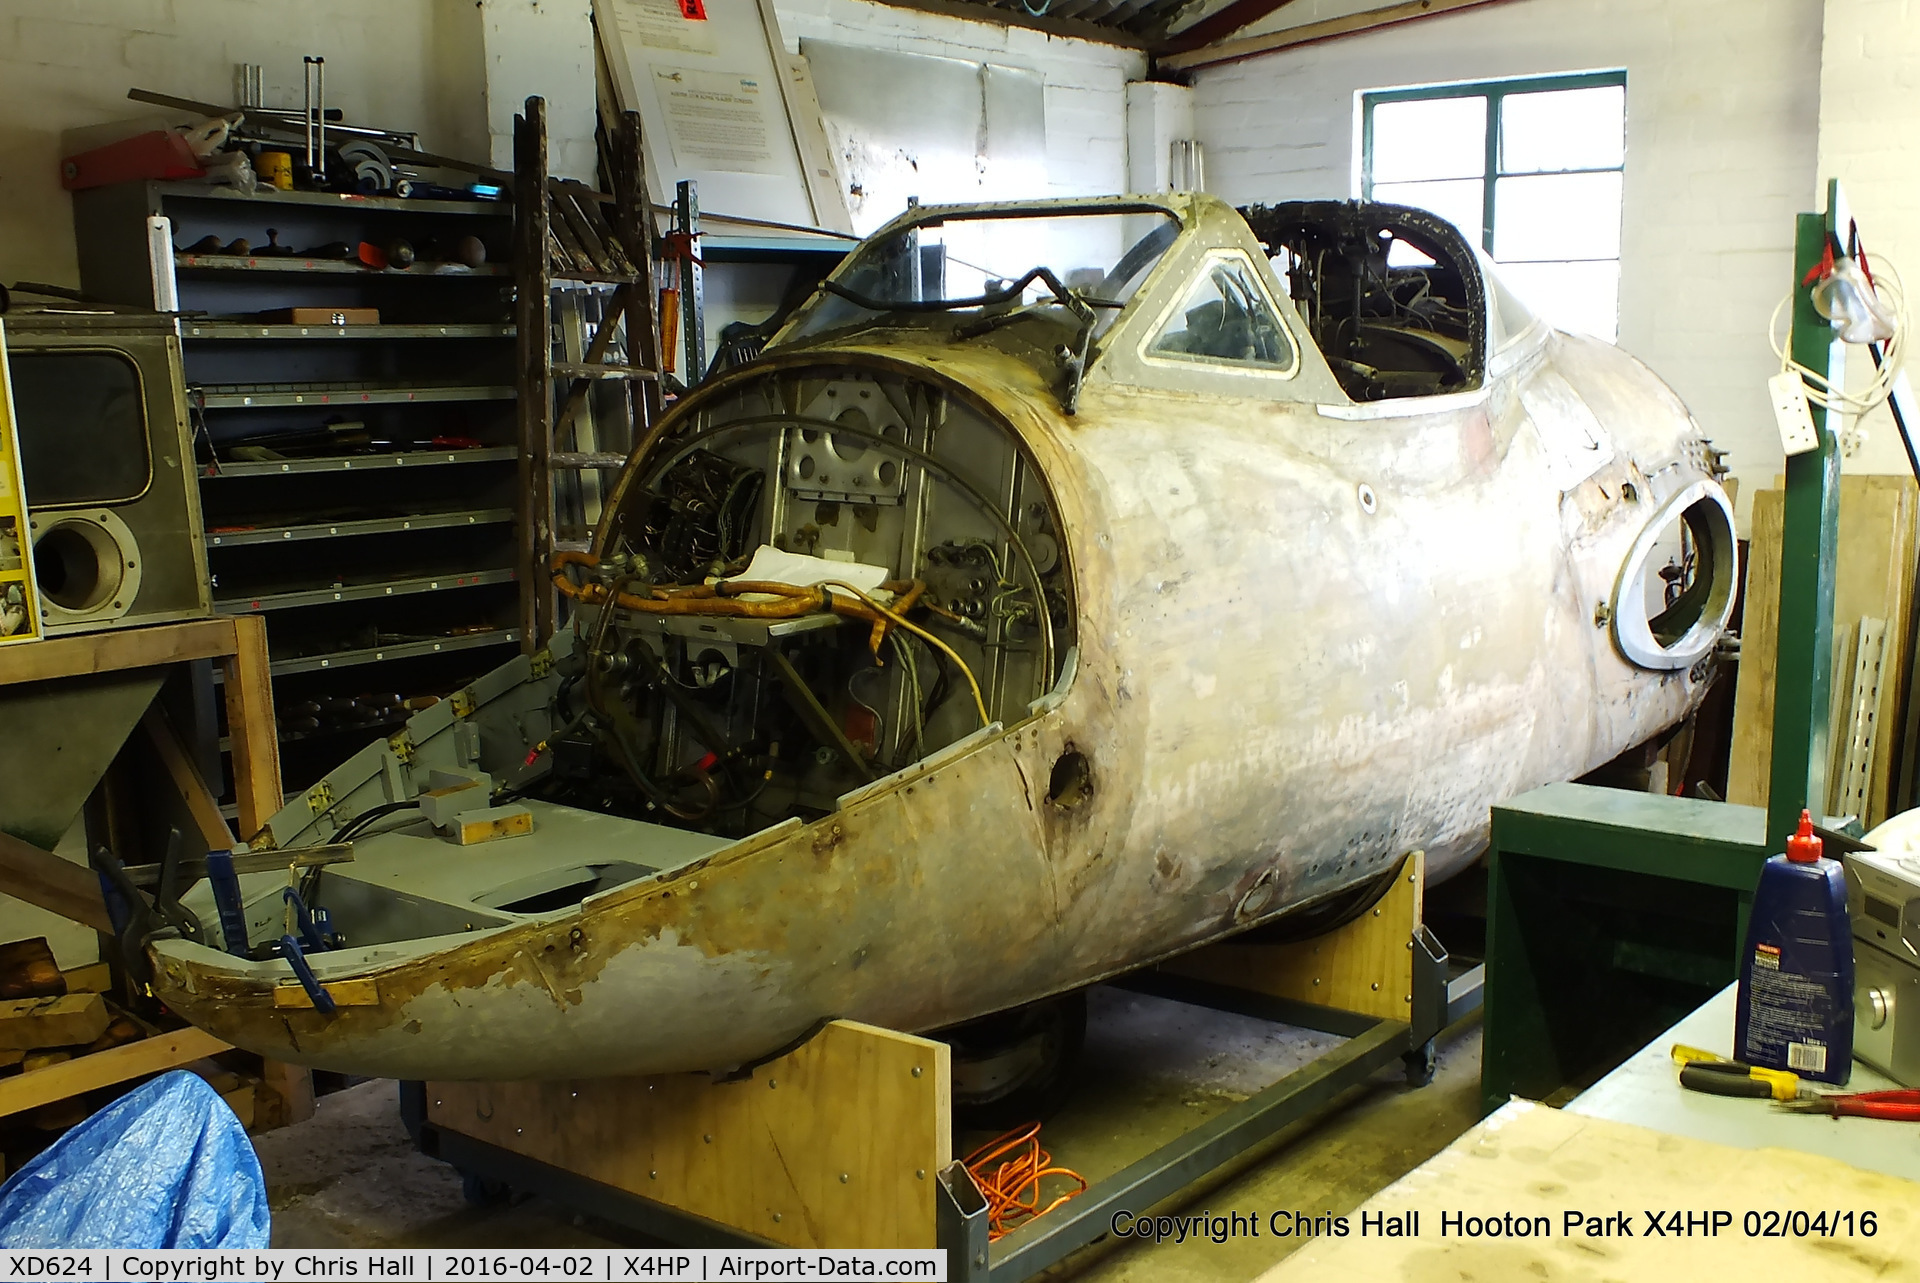 XD624, De Havilland DH-115 Vampire T.11 C/N 15449, awaiting restoration & preservation at Hooton Park